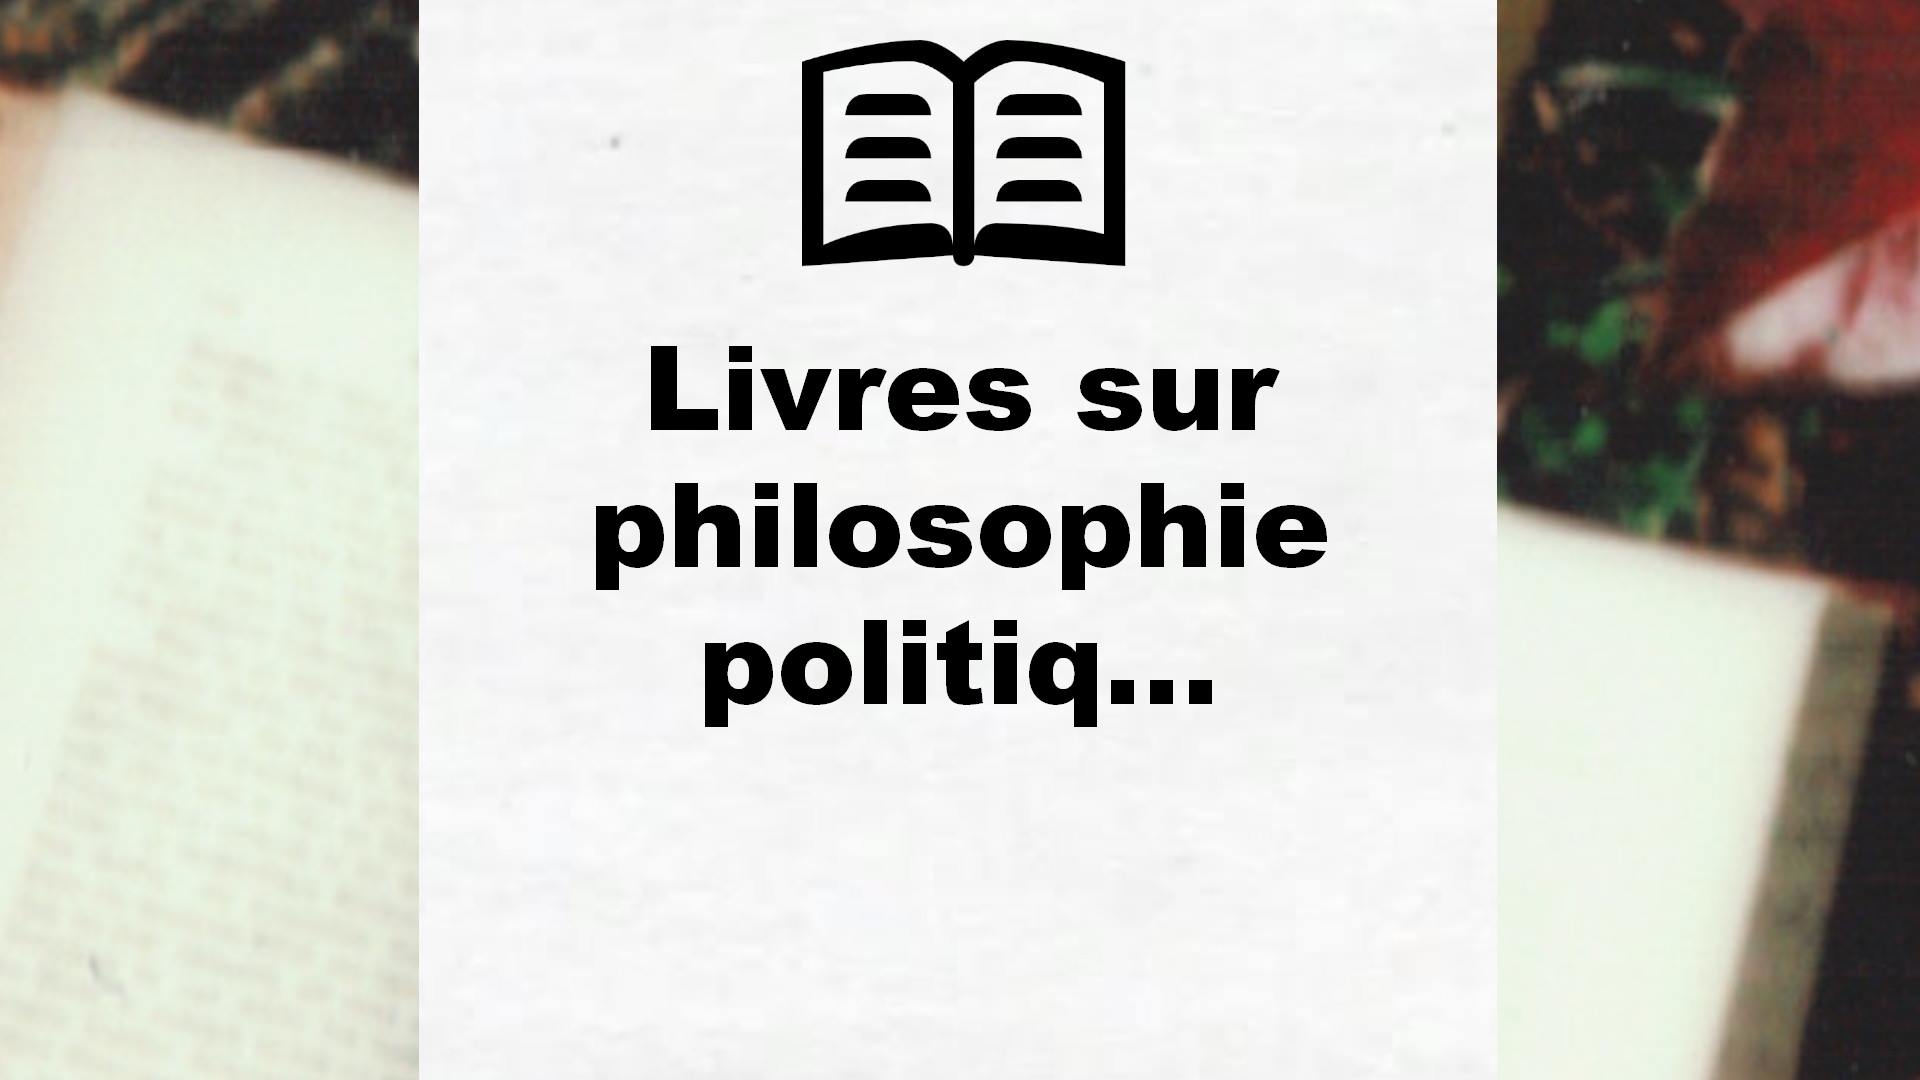 Livres sur philosophie politique